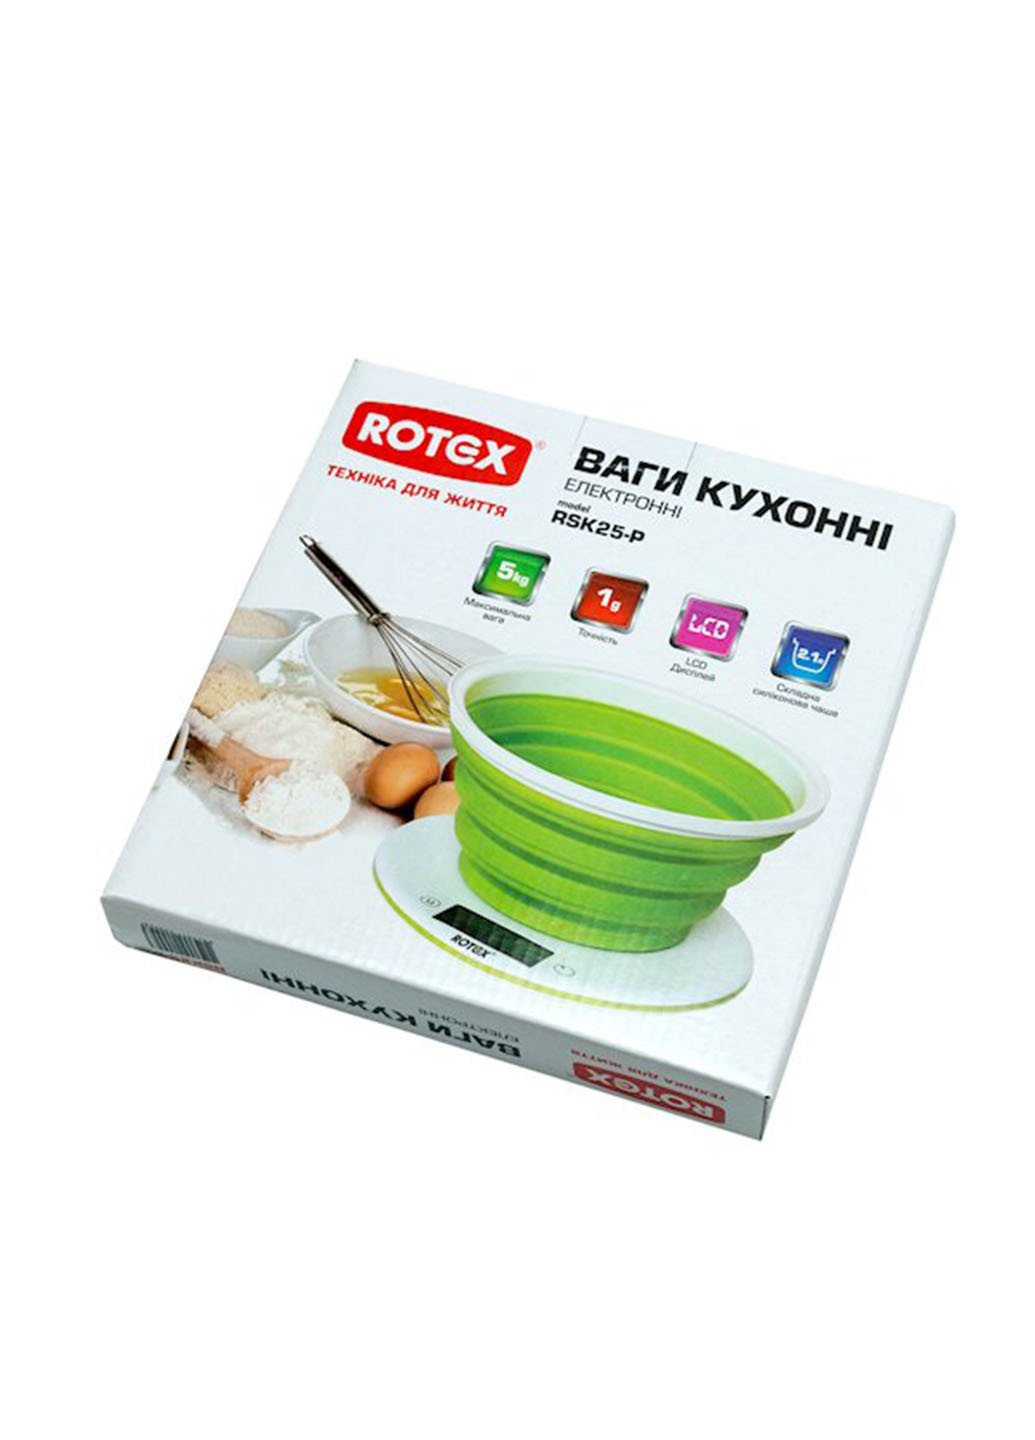 Весы кухонные Rotex rsk25-p (138094026)